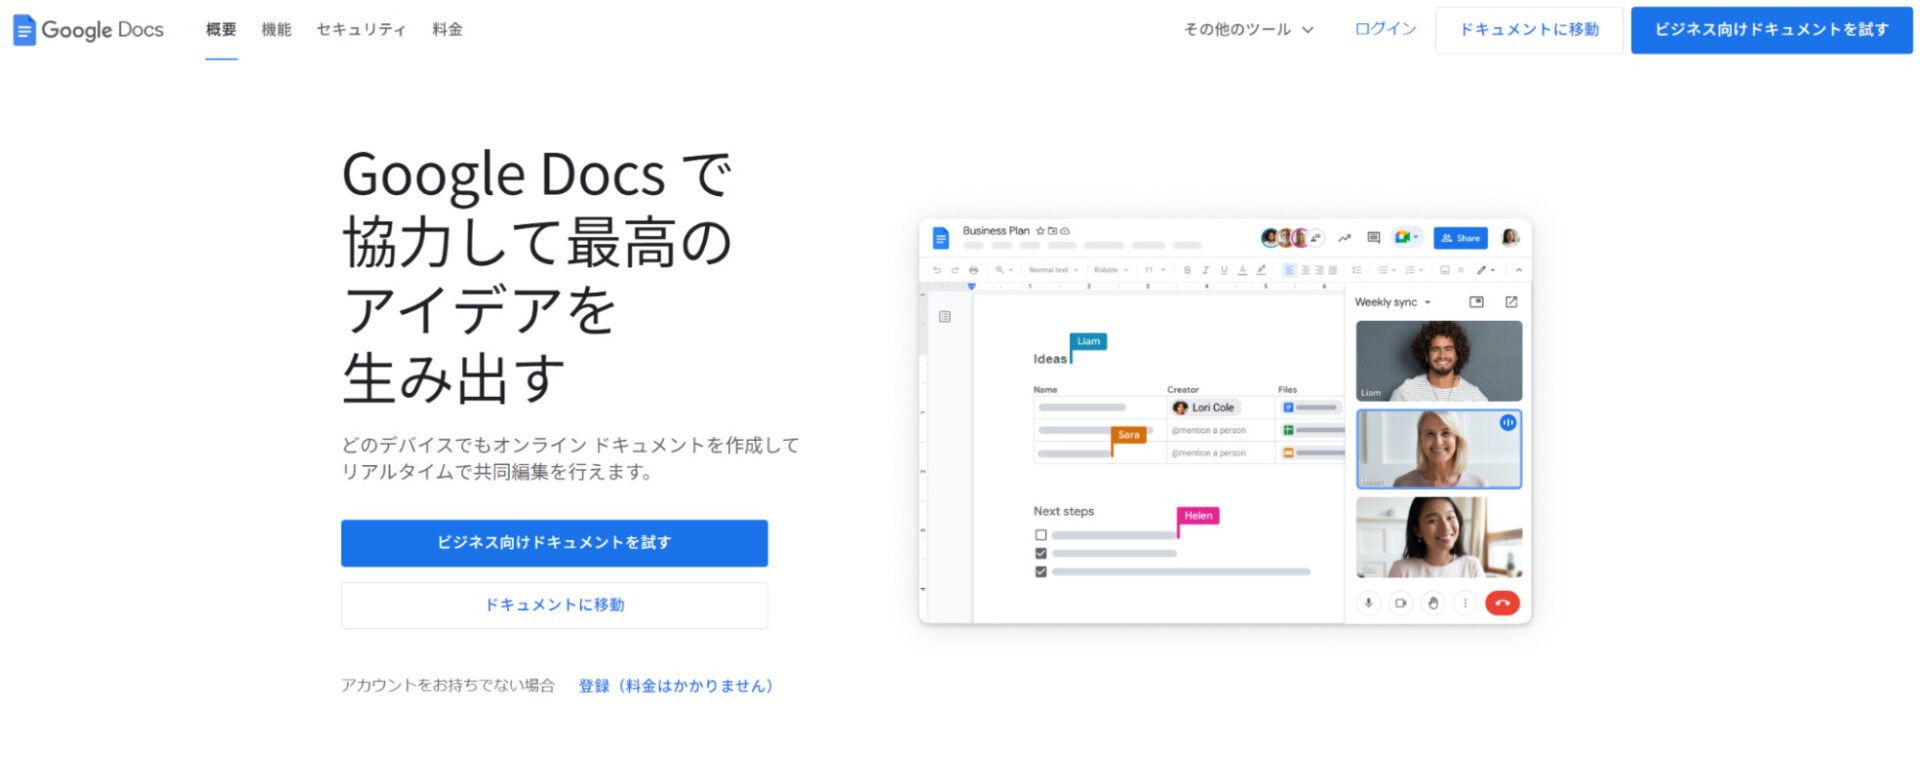 出典：Google Docs: オンライン ドキュメント エディタ | Google Workspace